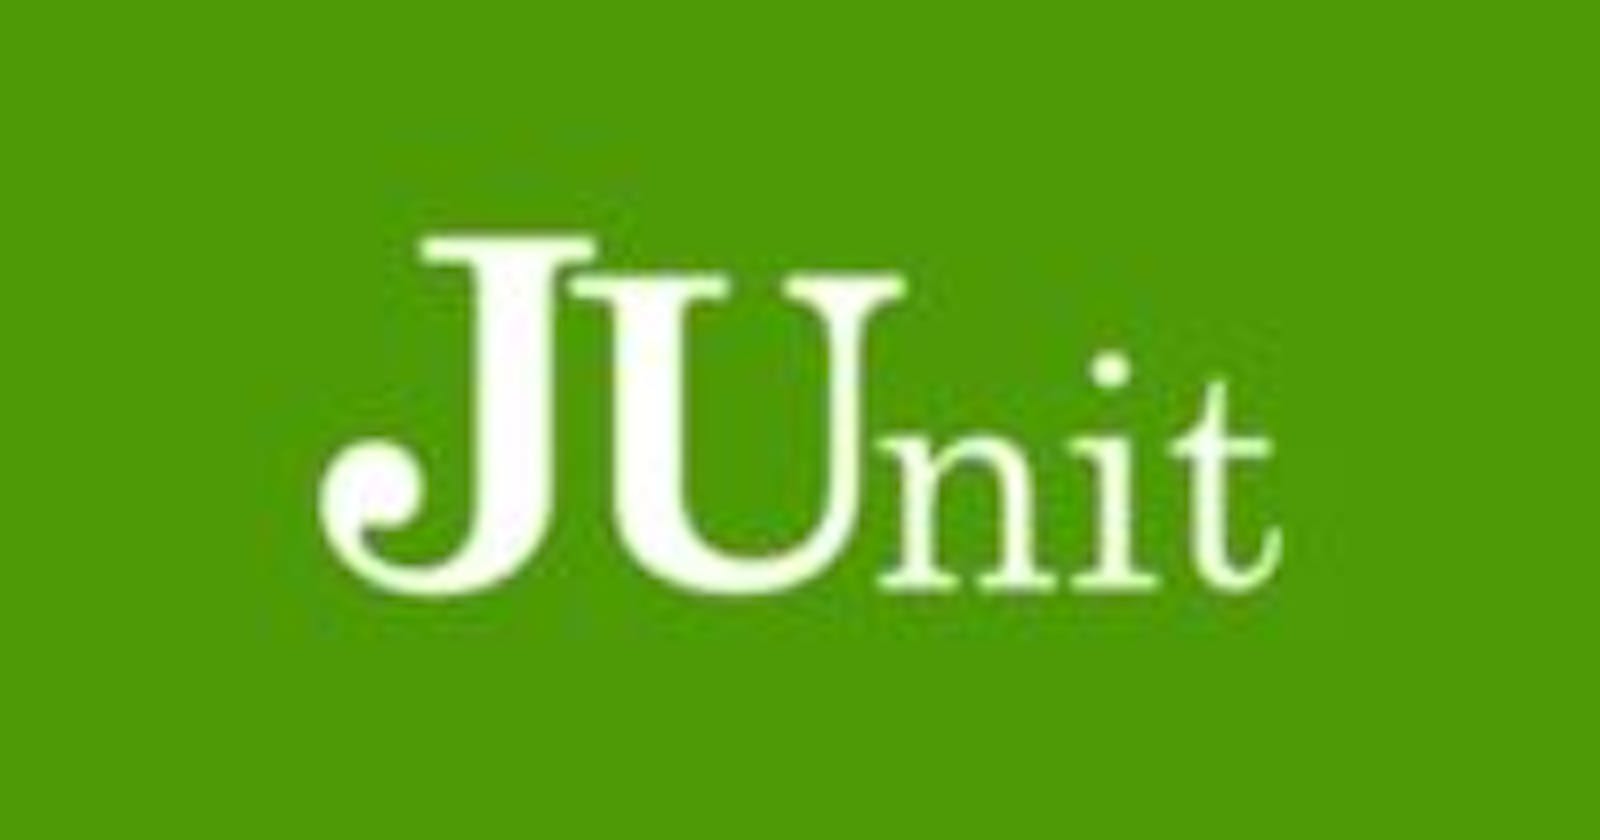 Test Driven Development With JUnit5. Part-1 (Introduction)